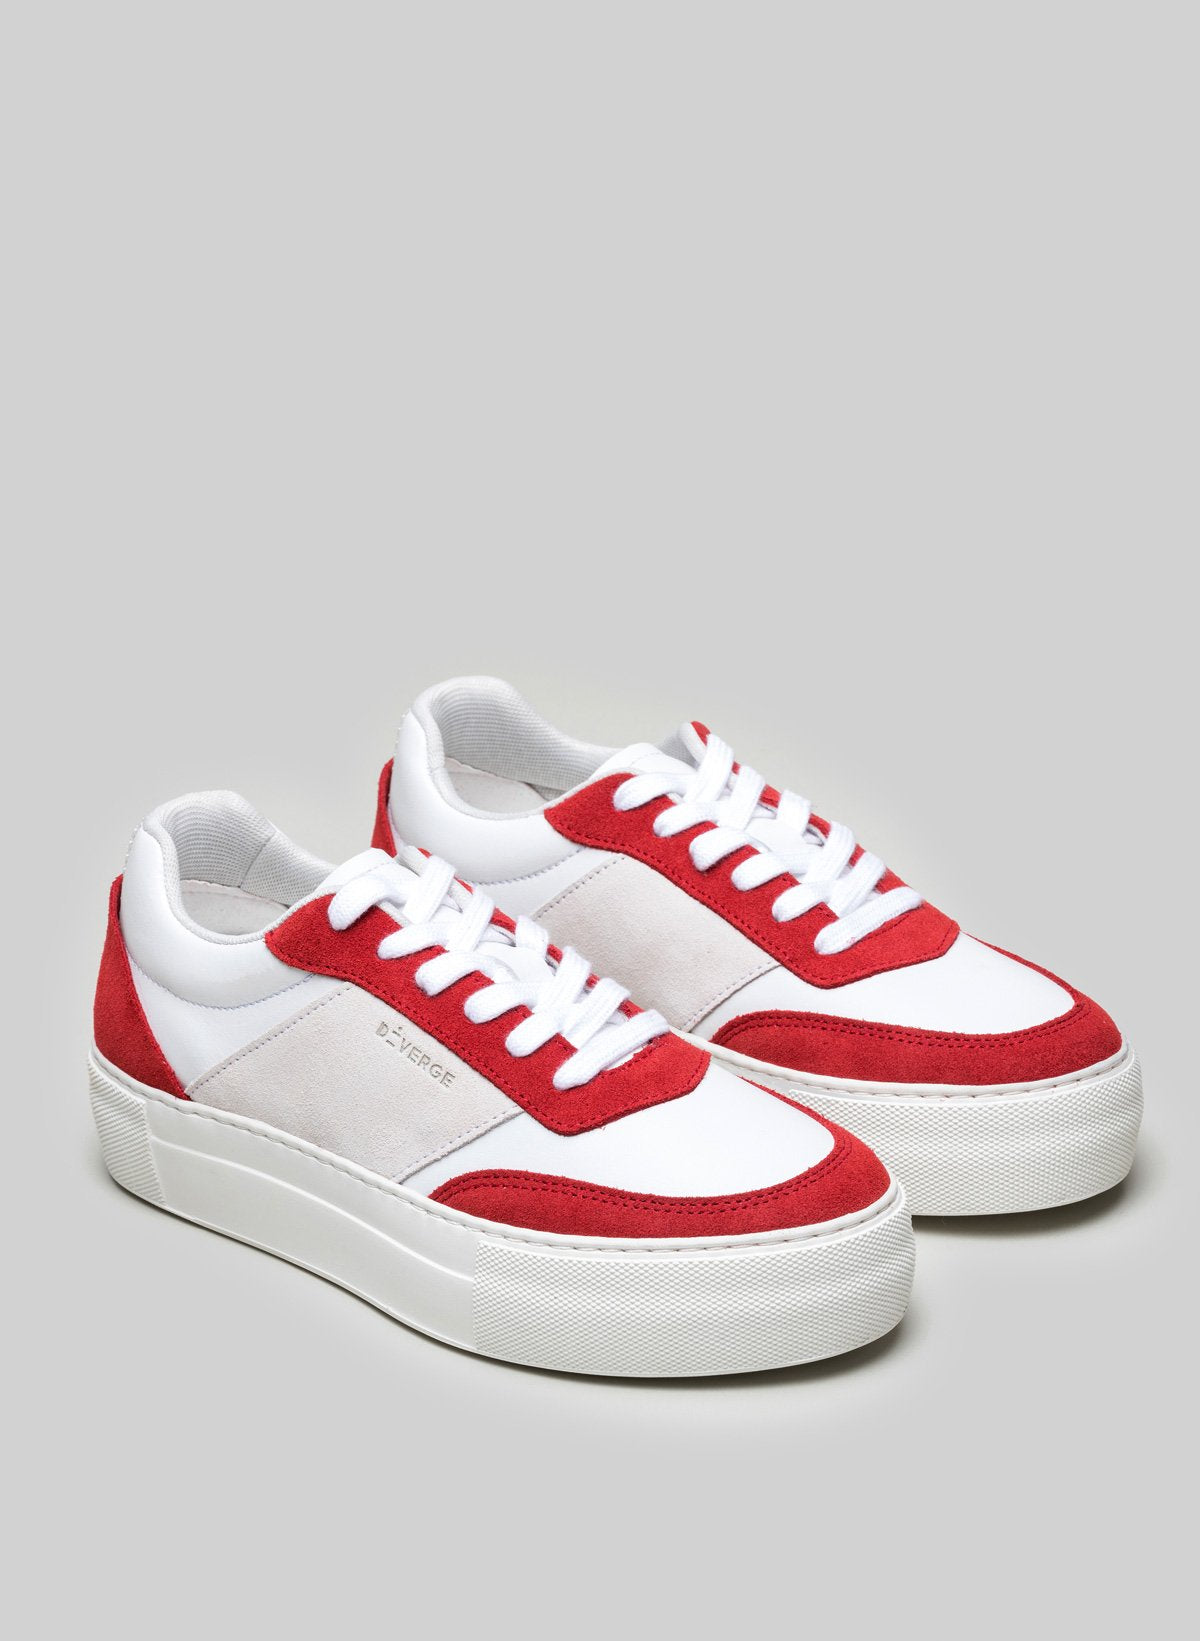 Diverge rosso, bianco e grigio personalizzato low top sneakers.